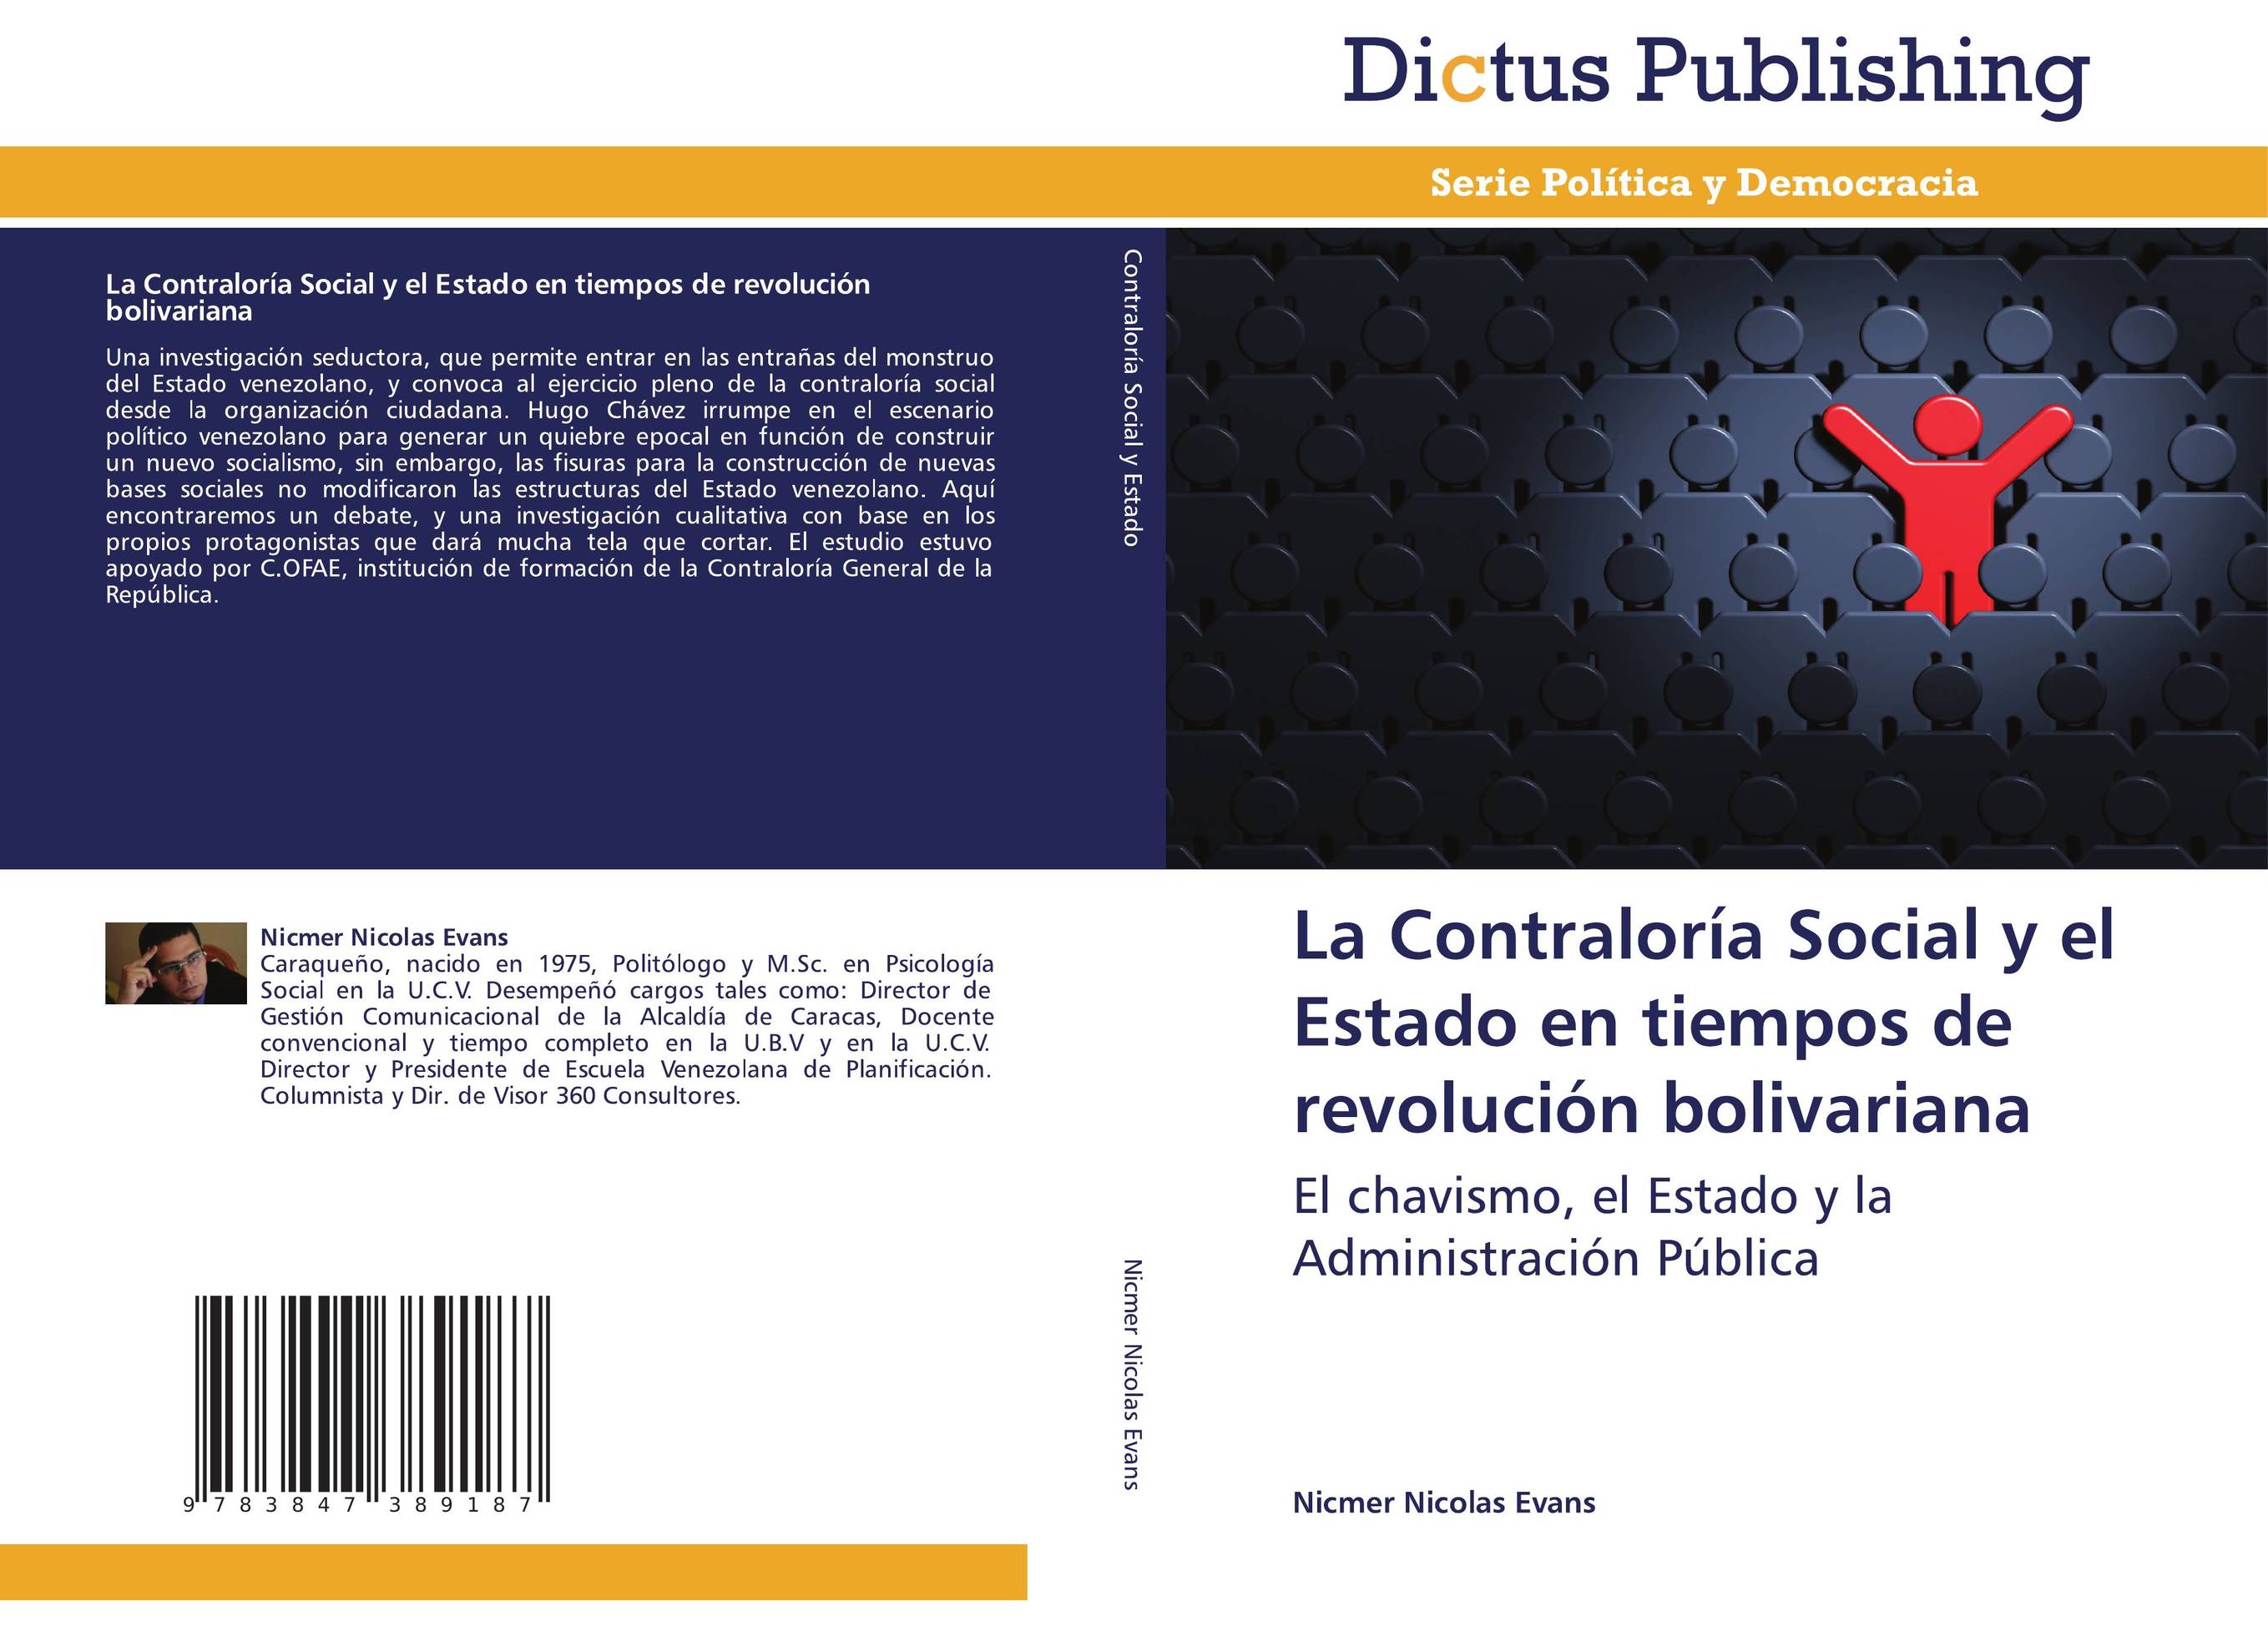 La Contraloría Social y el Estado en tiempos de revolución bolivariana